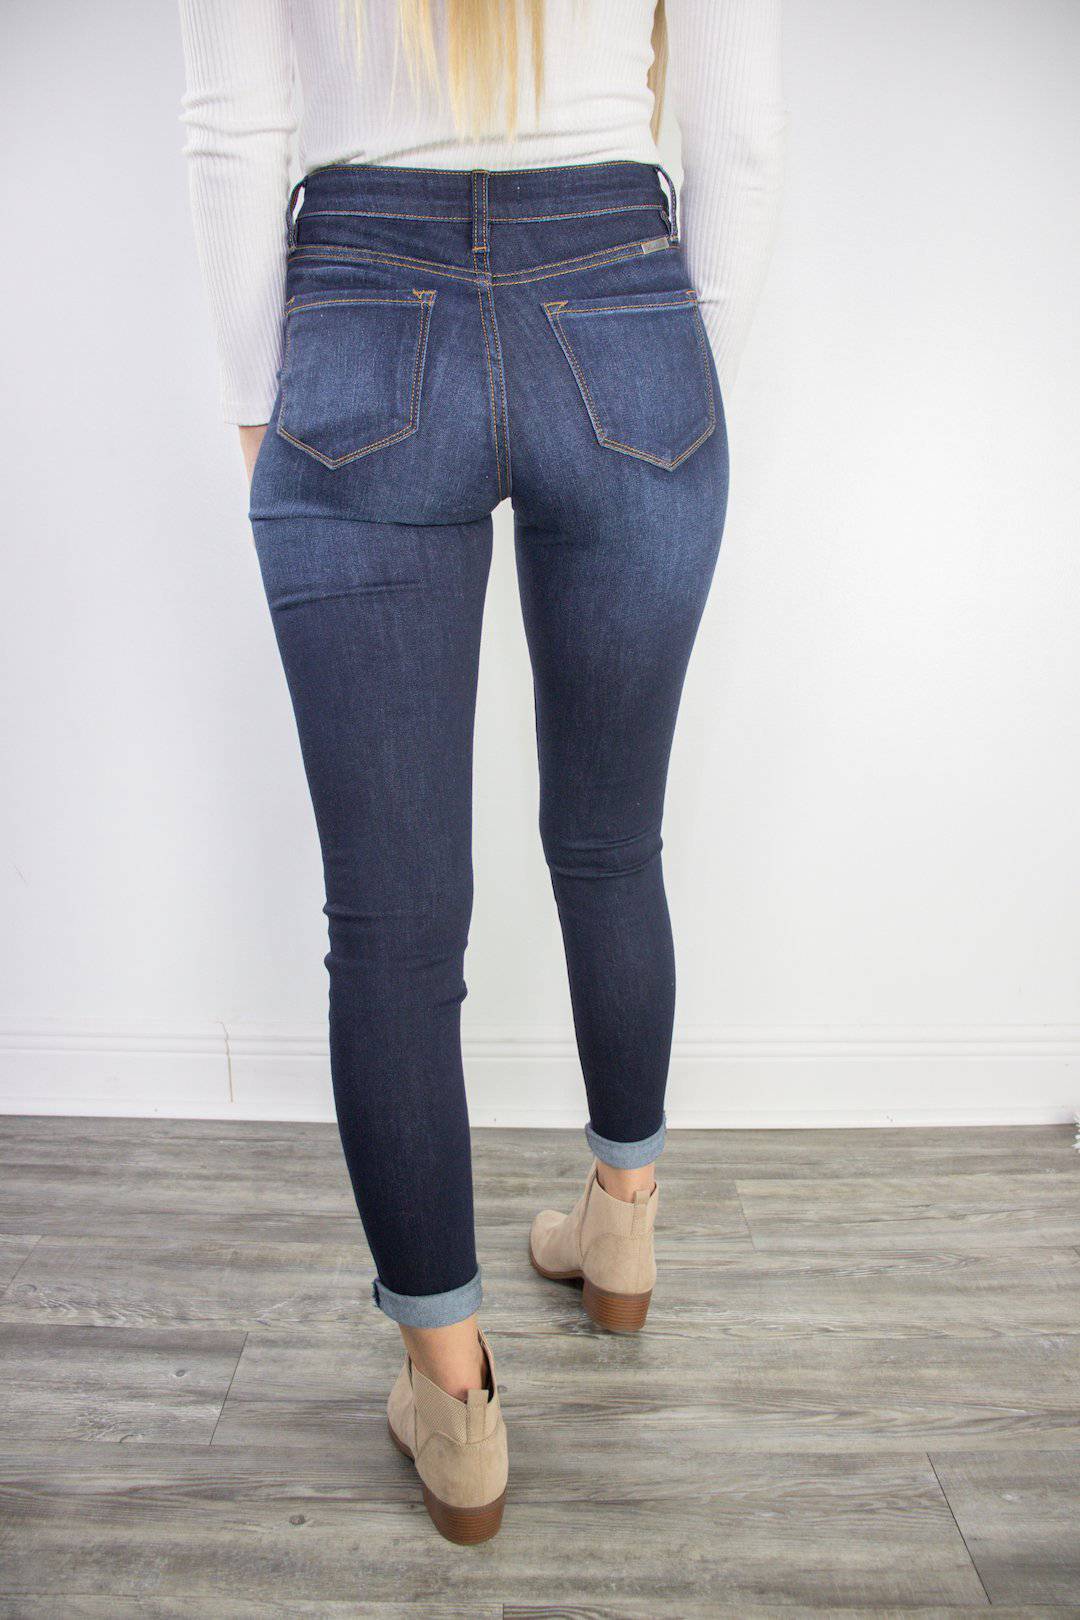 KanCan Dark Super Skinny Jeans - Select Trends Boutique